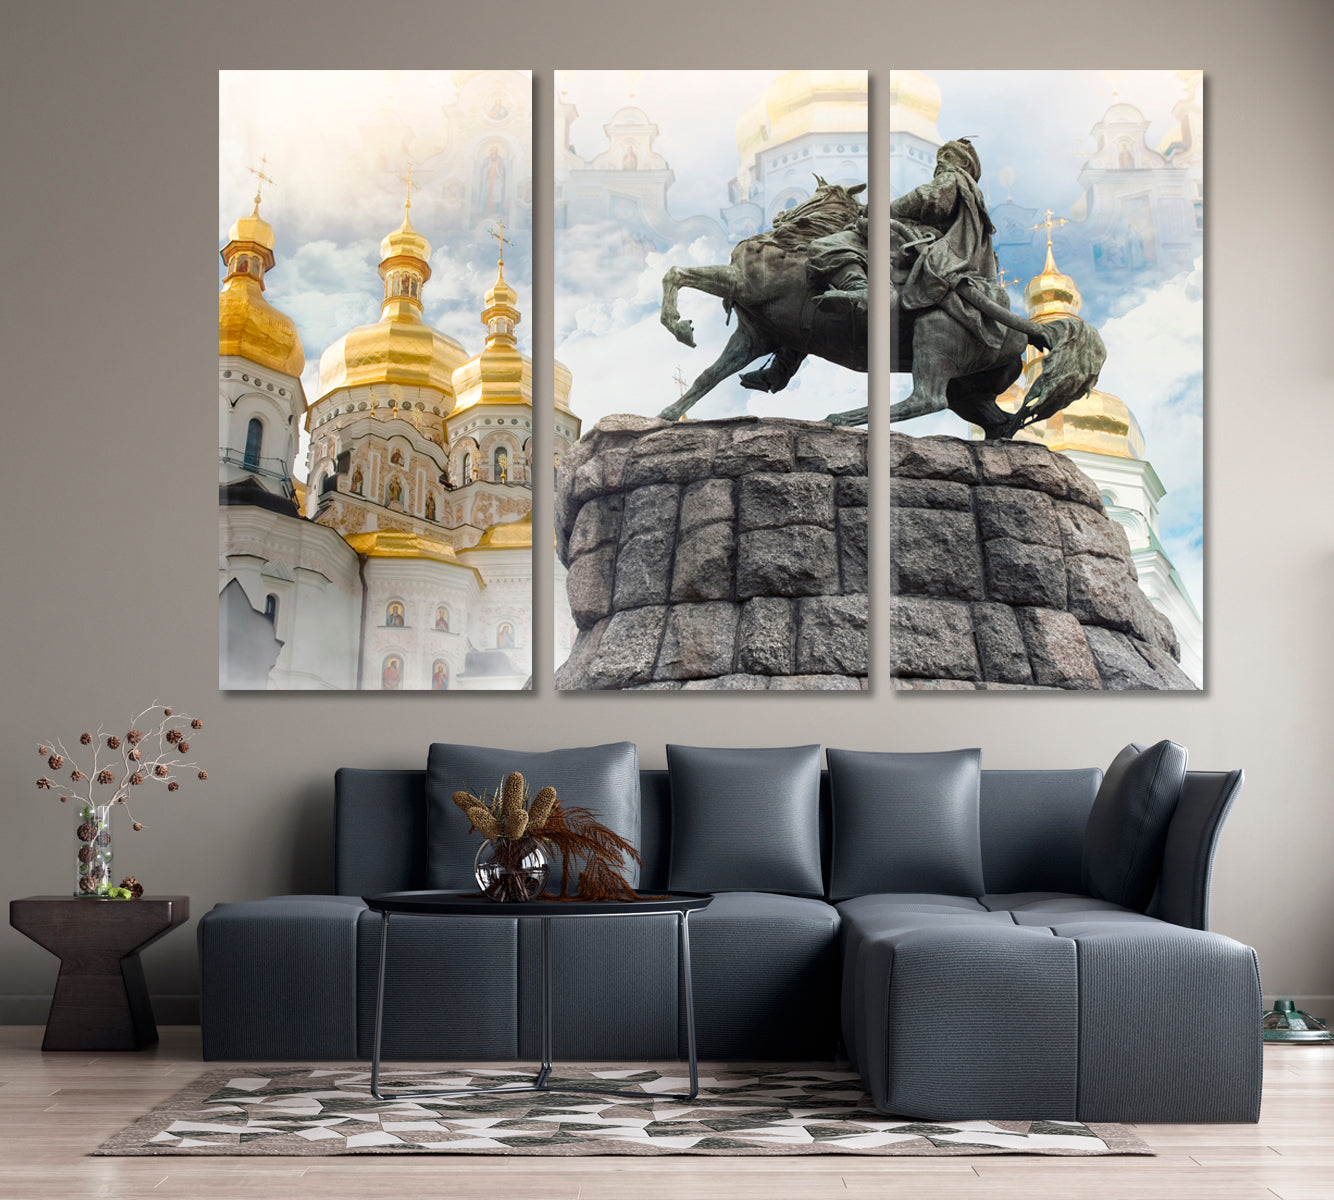 Golden Dome Pechersk Lavra Church Kyiv Ukraine Cities Wall Art Artesty 3 panels 36" x 24" 